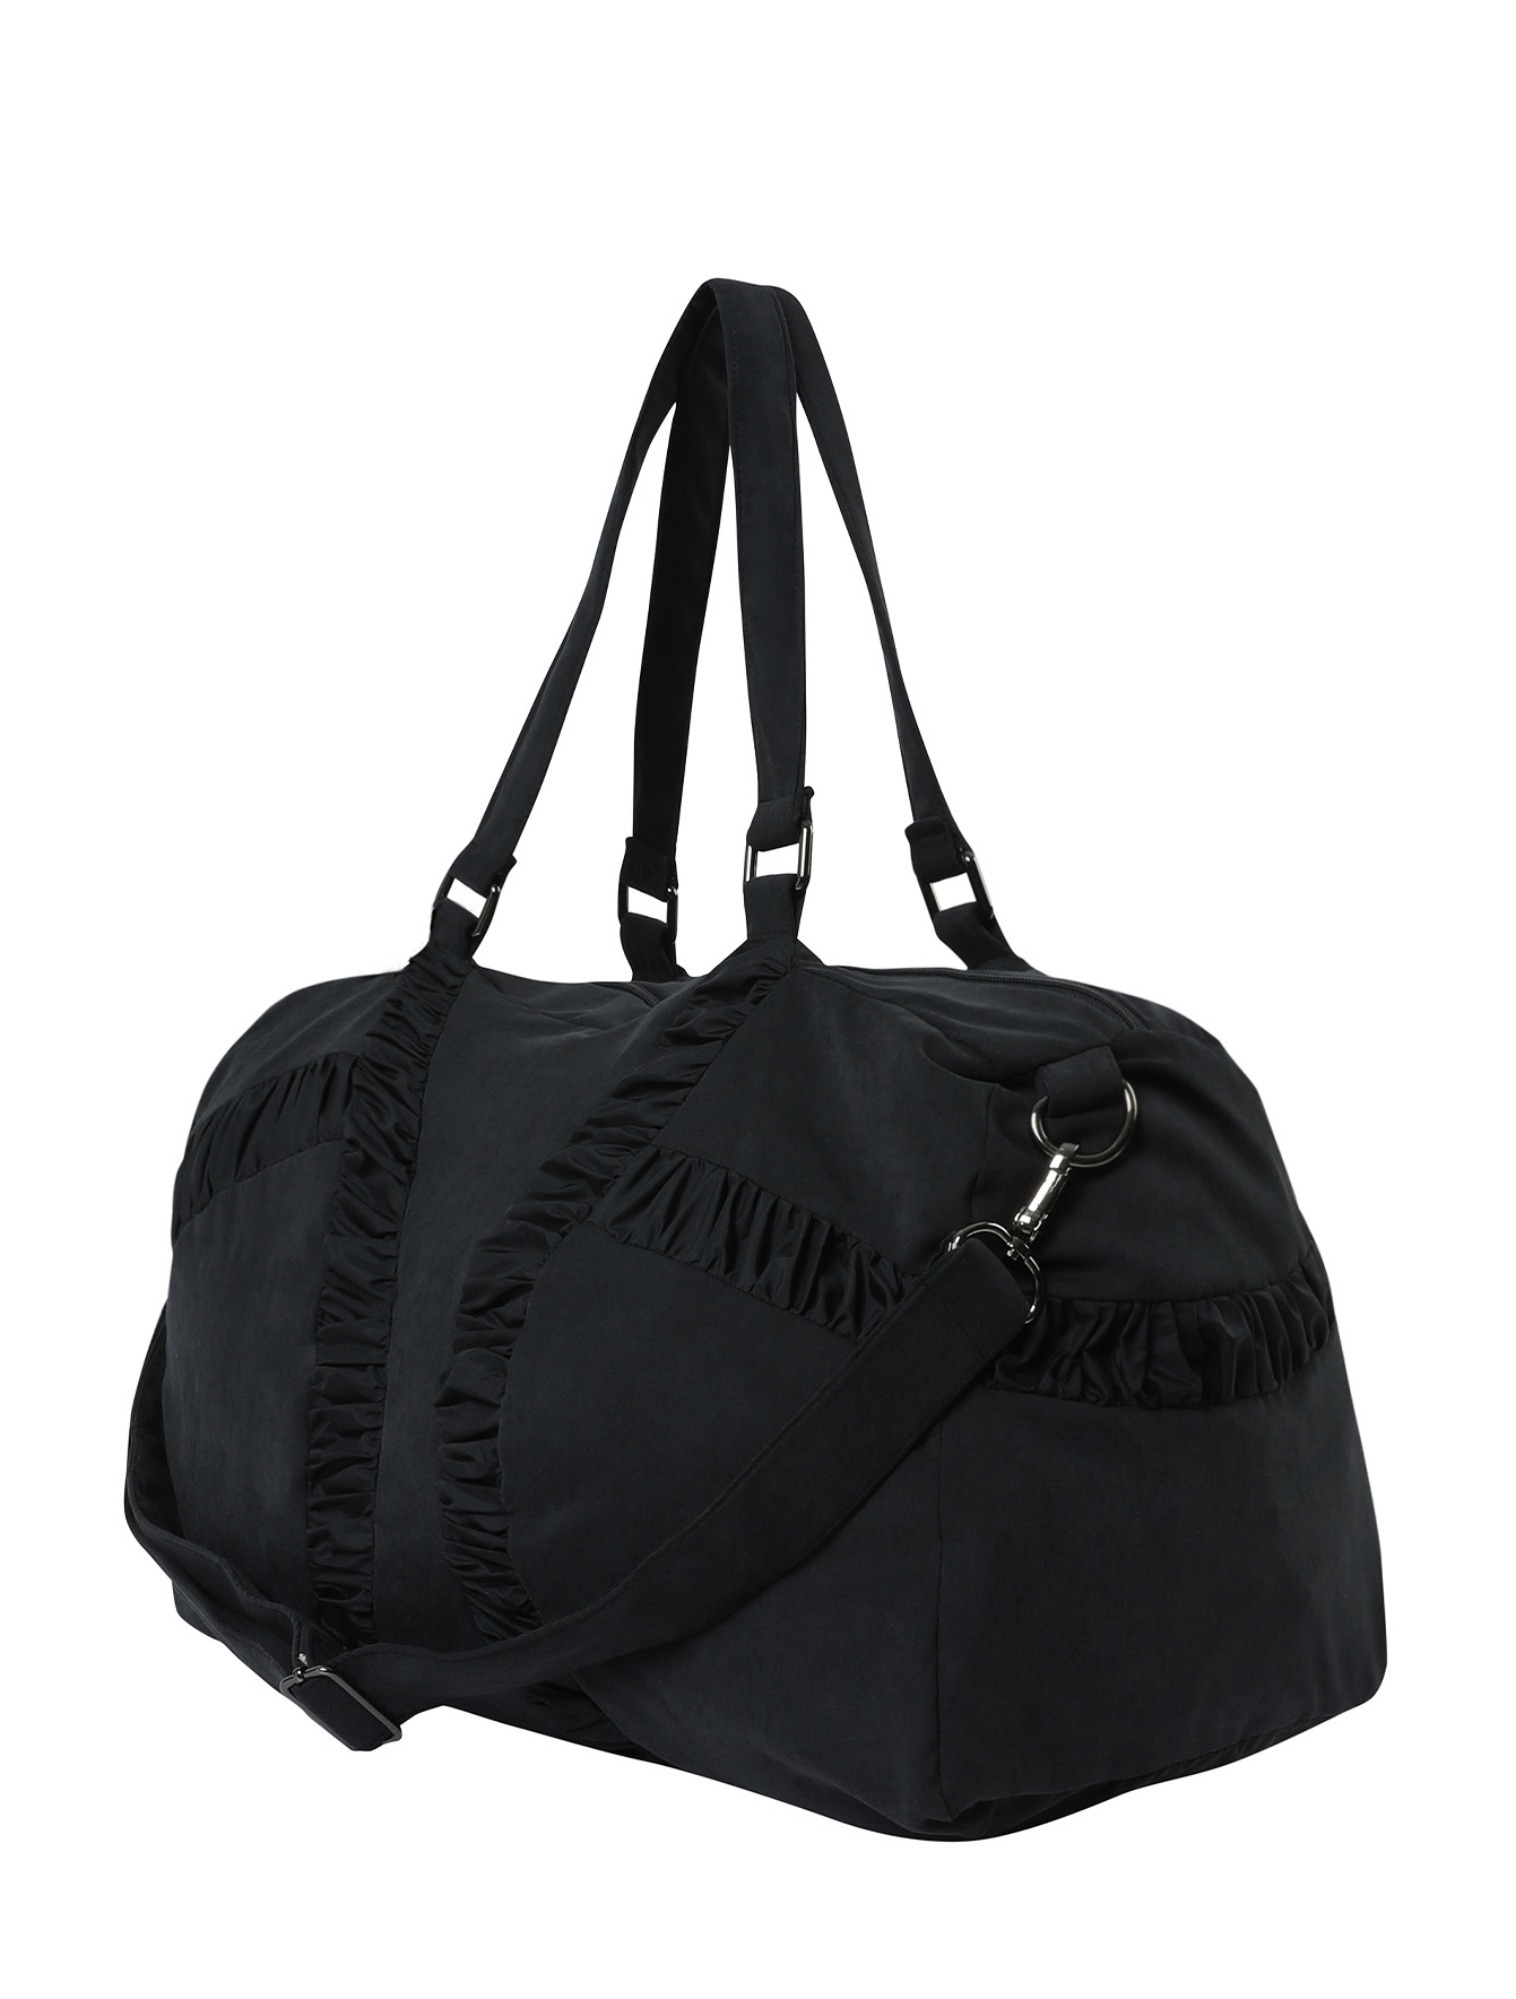 shirring bag (Black)⠀⠀⠀⠀⠀⠀⠀⠀ ⠀⠀⠀                             3월 25일 이후 순차발송